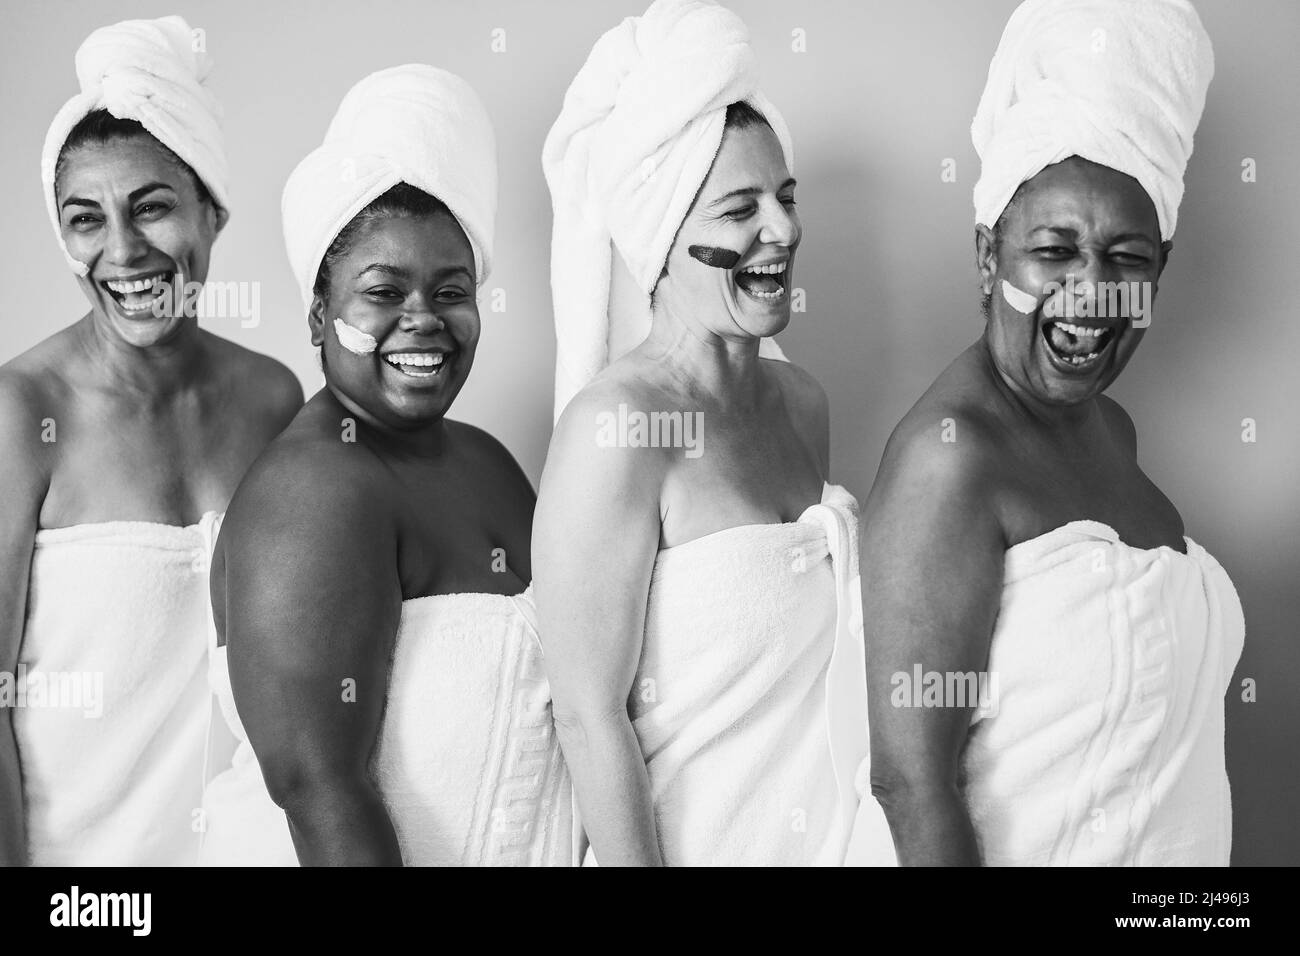 Frauen mit mehreren Generationen und verschiedenem Körper lachen zusammen, während sie Körperhandtücher tragen - Fokus auf kaukasisches weibliches Gesicht - Schwarzes und weißes Leitbild Stockfoto